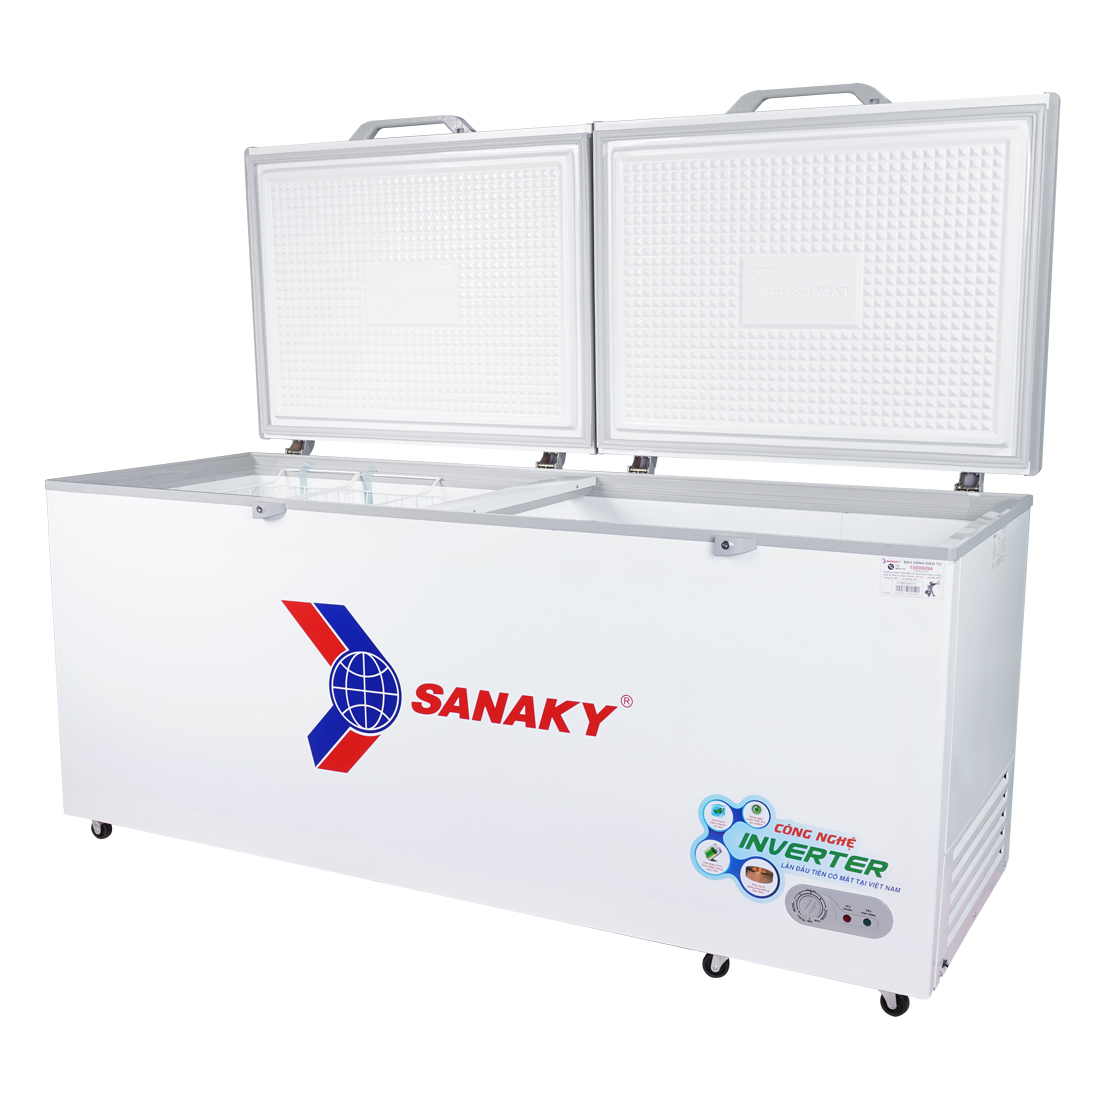 Tủ Đông Sanaky Inverter VH-8699HY3 1 Ngăn Đông 760 Lít giá rẻ nhất |  Dienmaythienphu